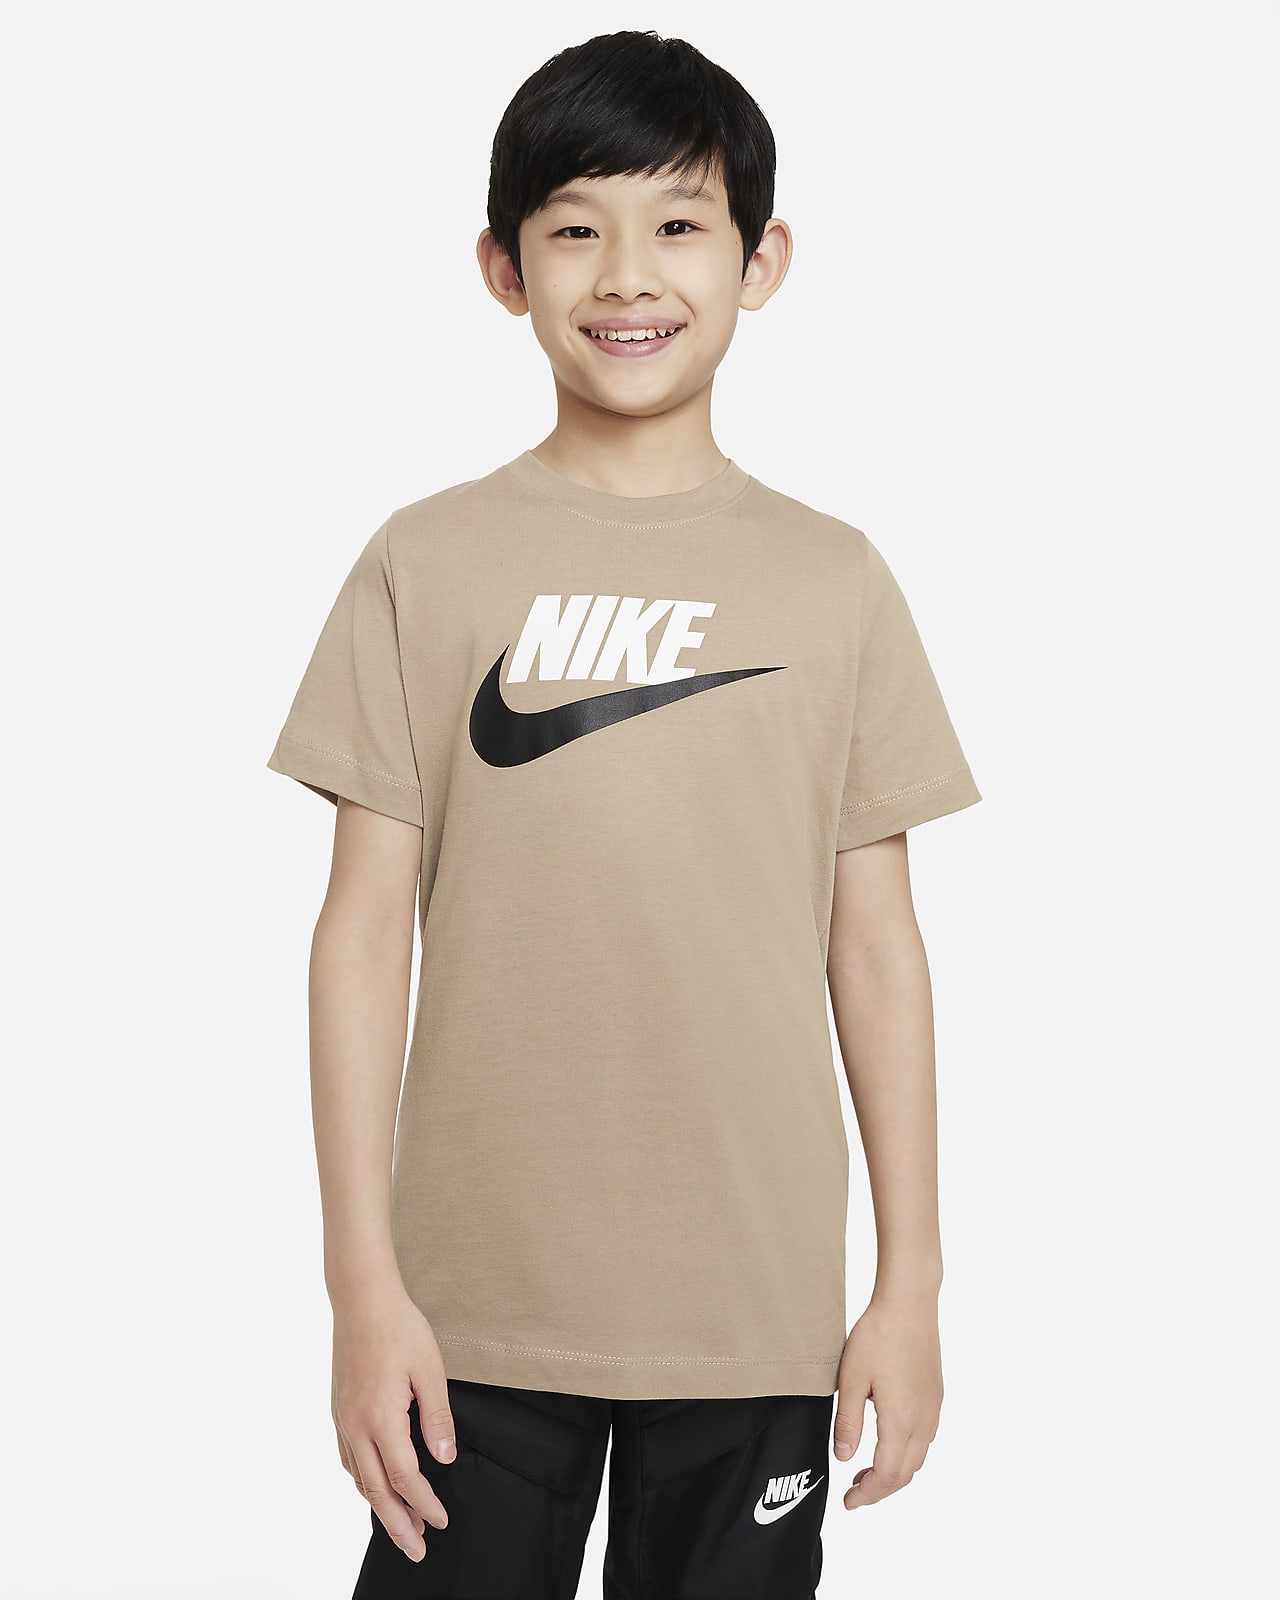 Nike Sportswear bomulls-T-skjorte til store barn